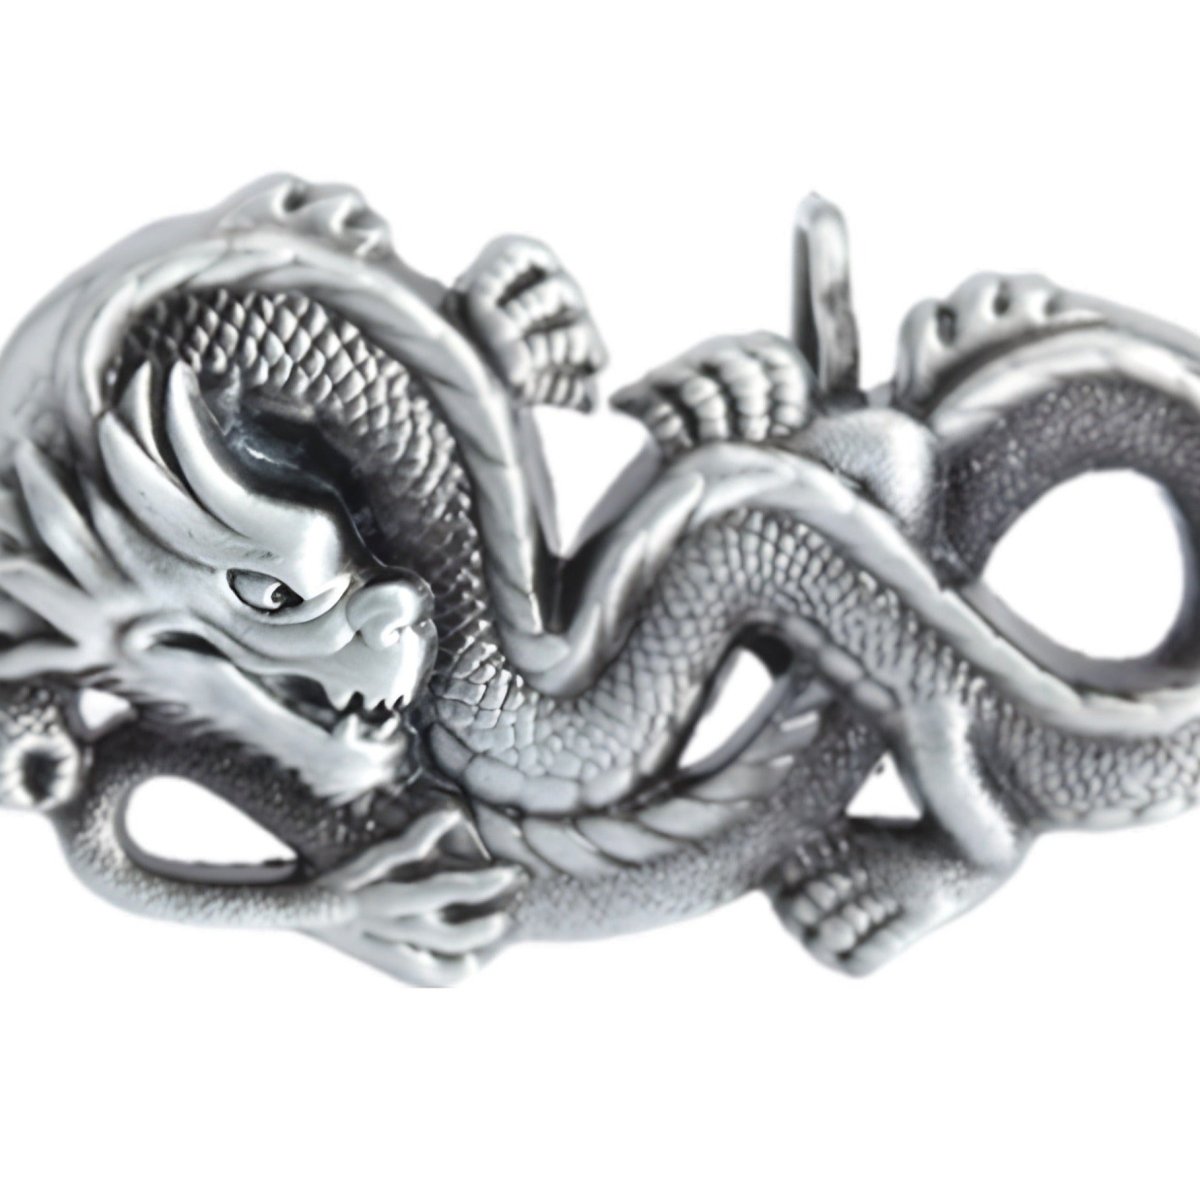 Boucle de ceinture Animal, dragon asiatique, modèle Brody - La Boutique de la Ceinture